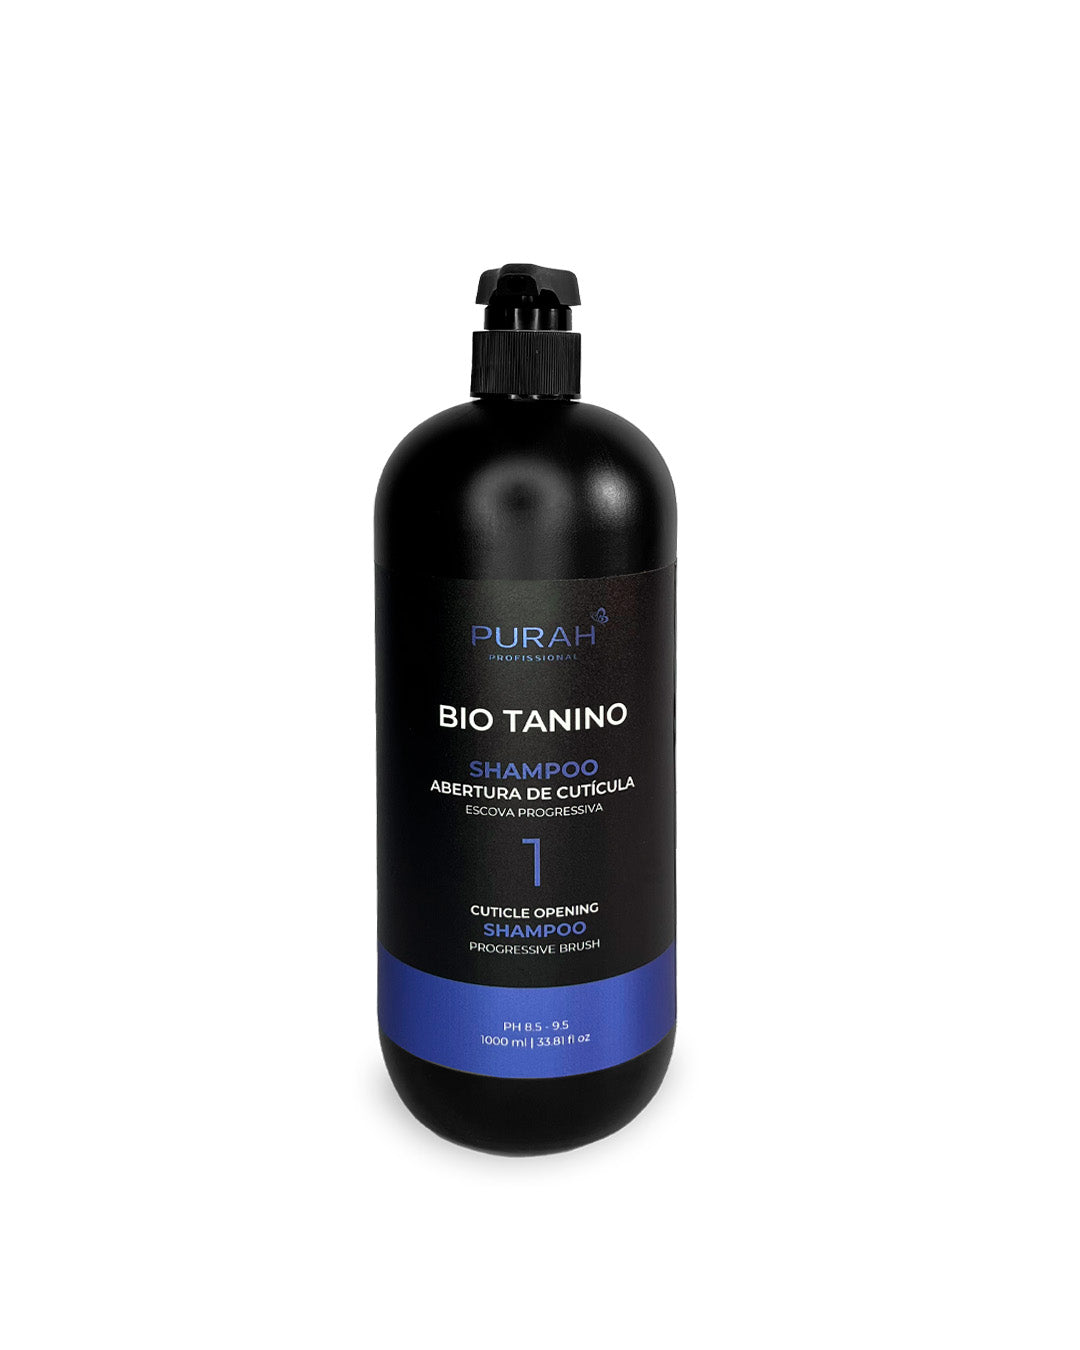 Bio Tanino - Shampoo de Abertura de Cutículas